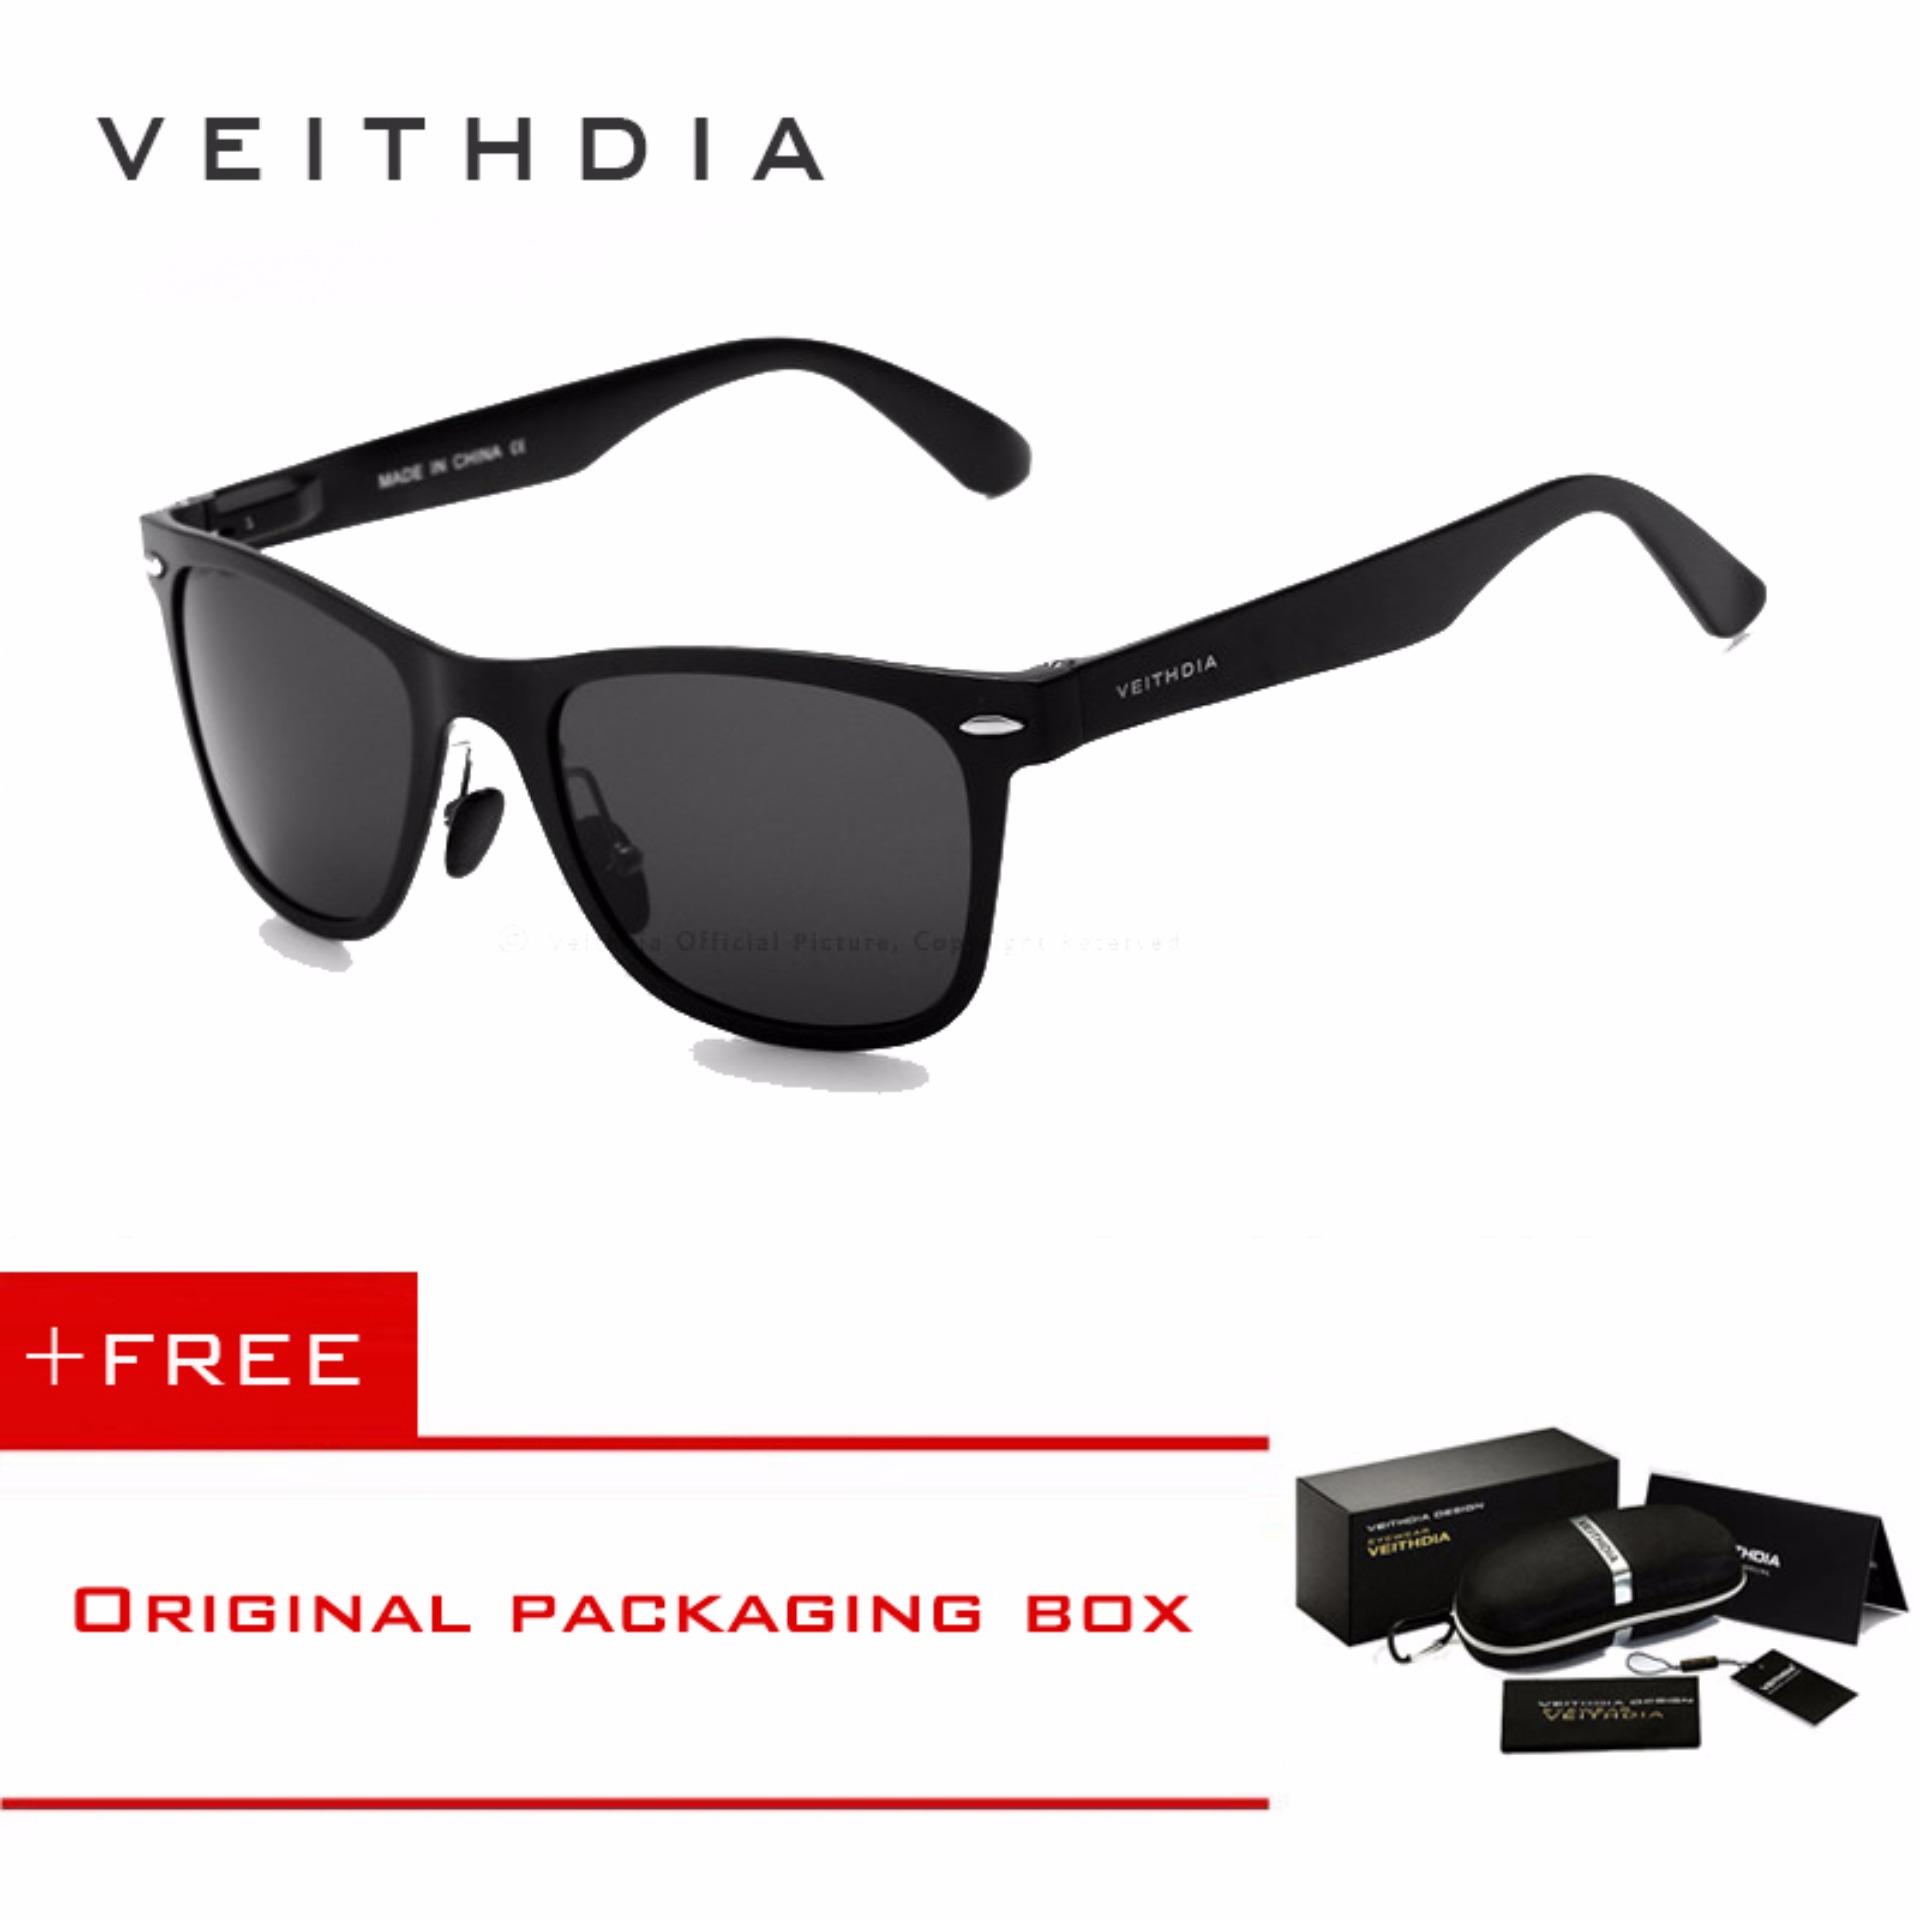 VEITHDIA Brand Aluminum Magnesium Men SunGlasses Eyewear Accessories Sunglasses 2140